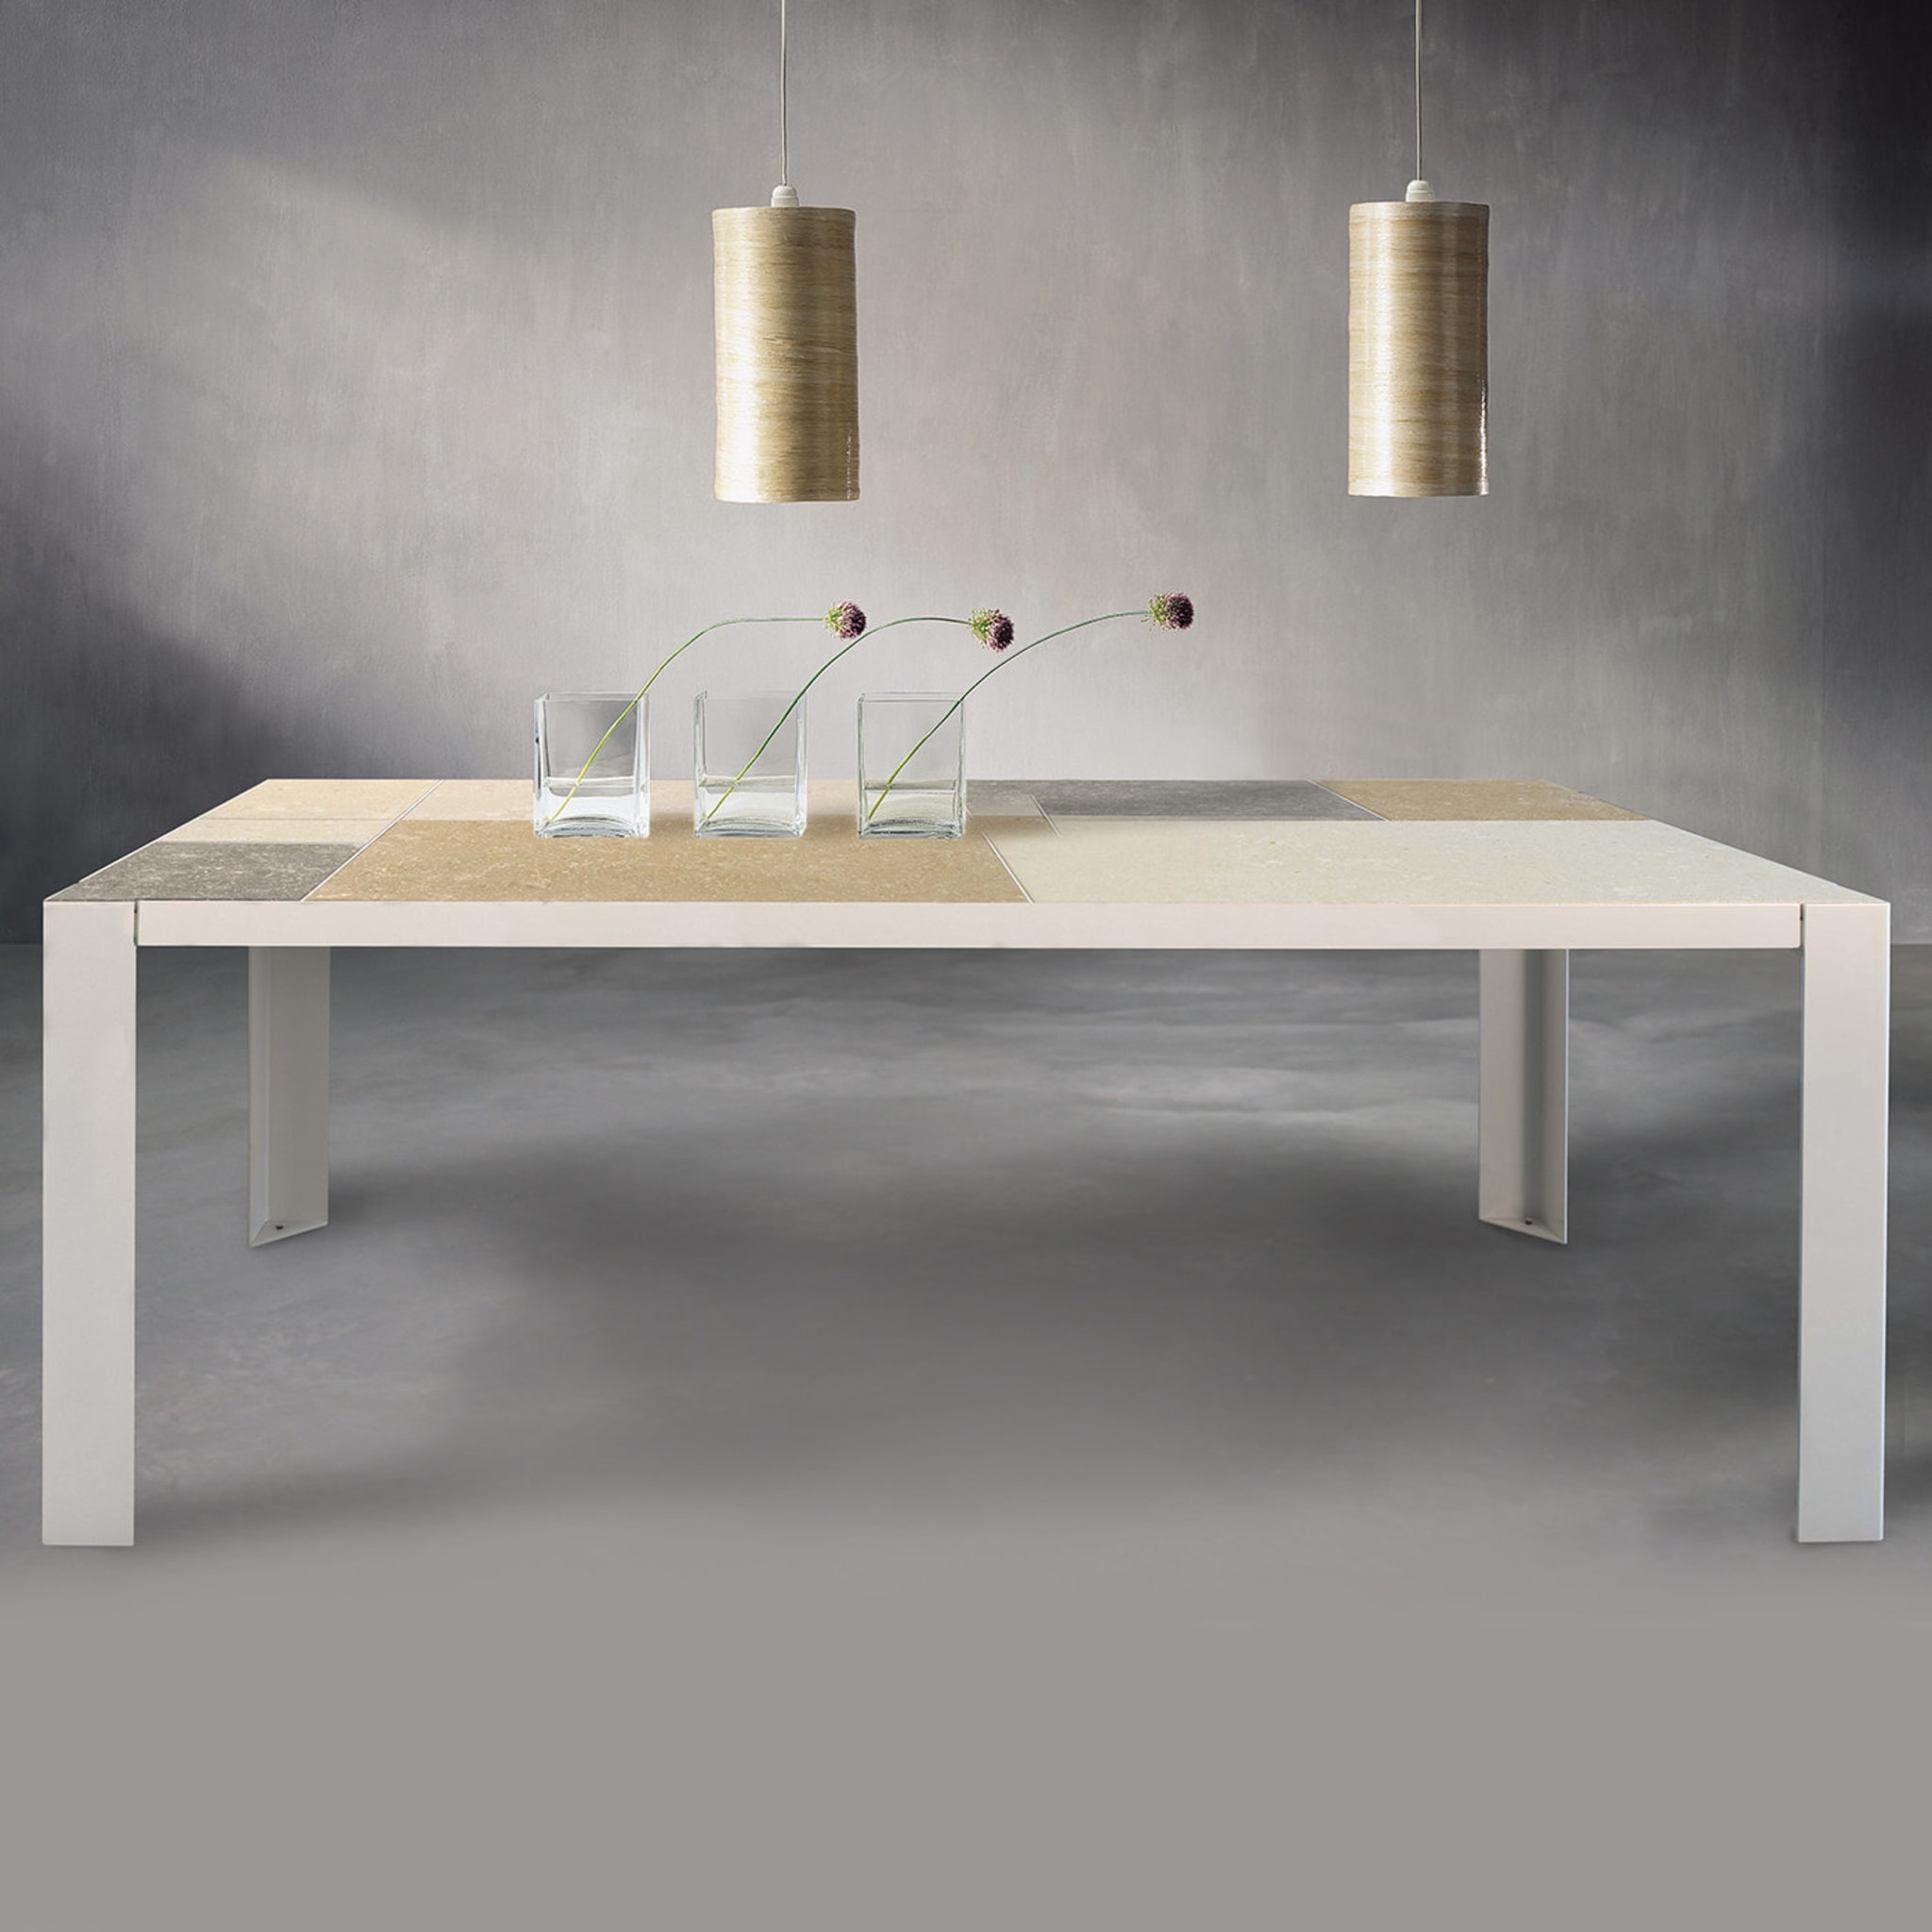 Domino White Table by Chiara Cibin - Alternative view 1